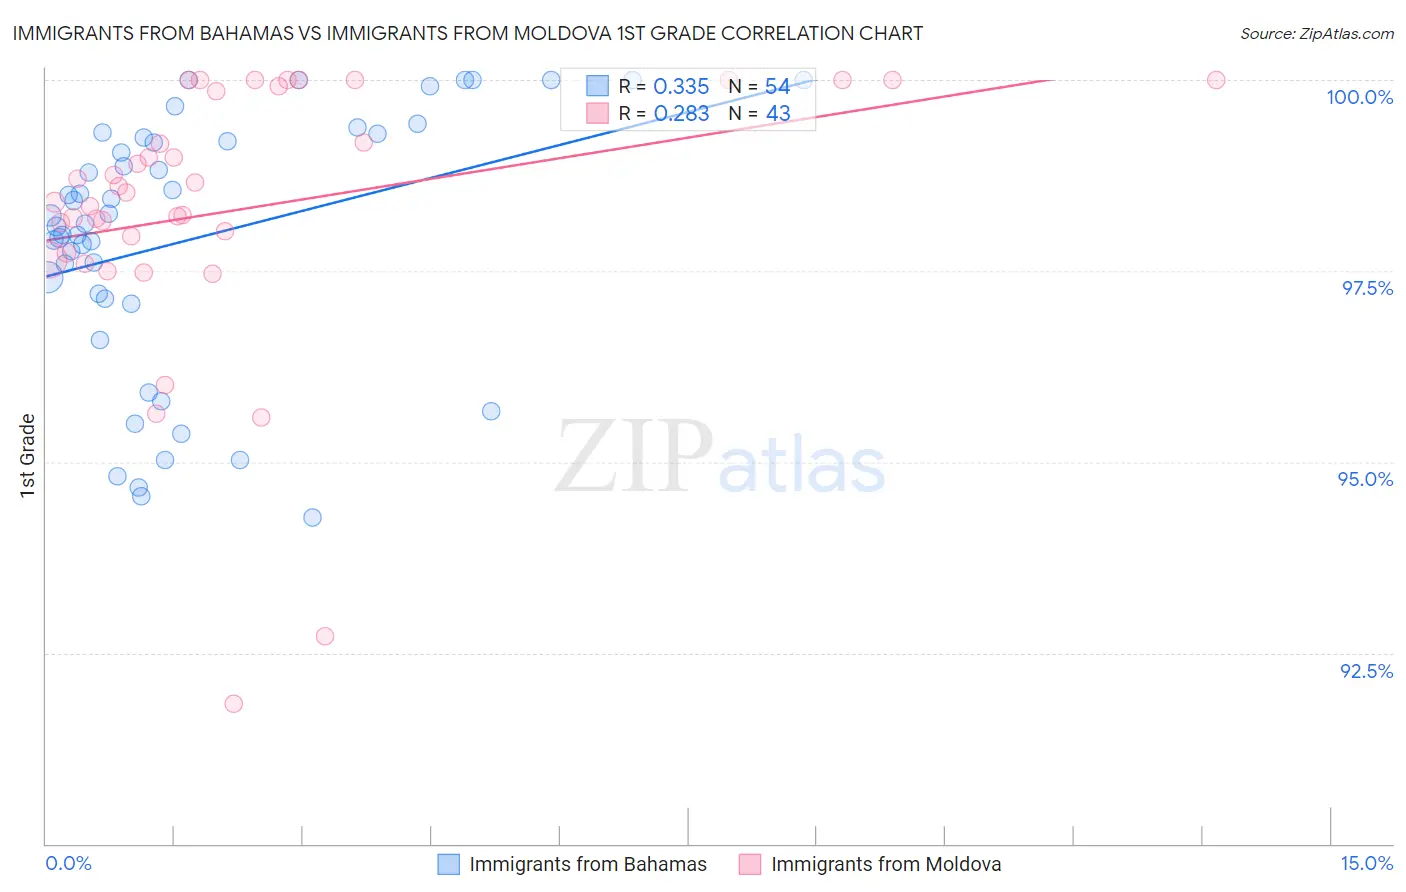 Immigrants from Bahamas vs Immigrants from Moldova 1st Grade